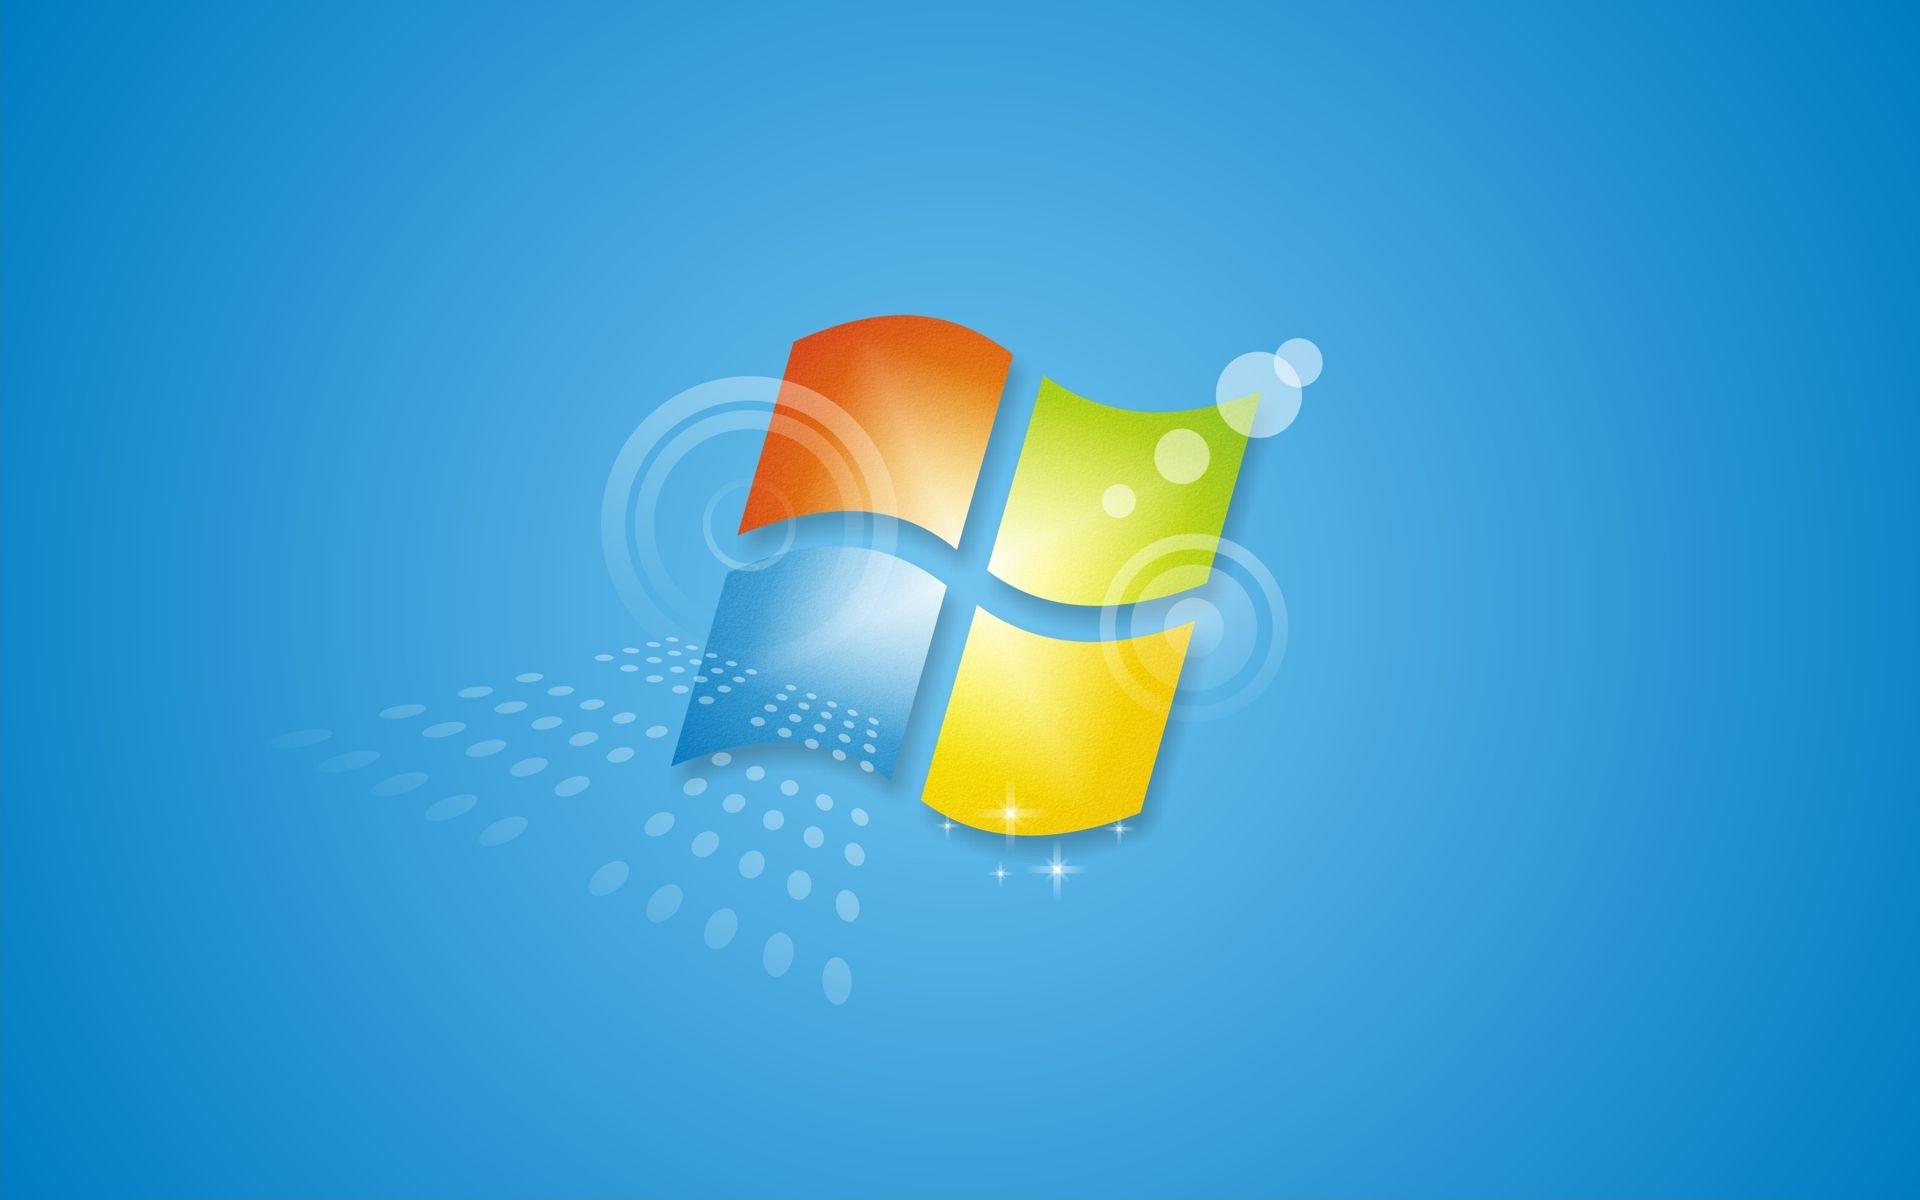 Fin de Windows 7 : les Extended Security Updates pour toutes les entreprises